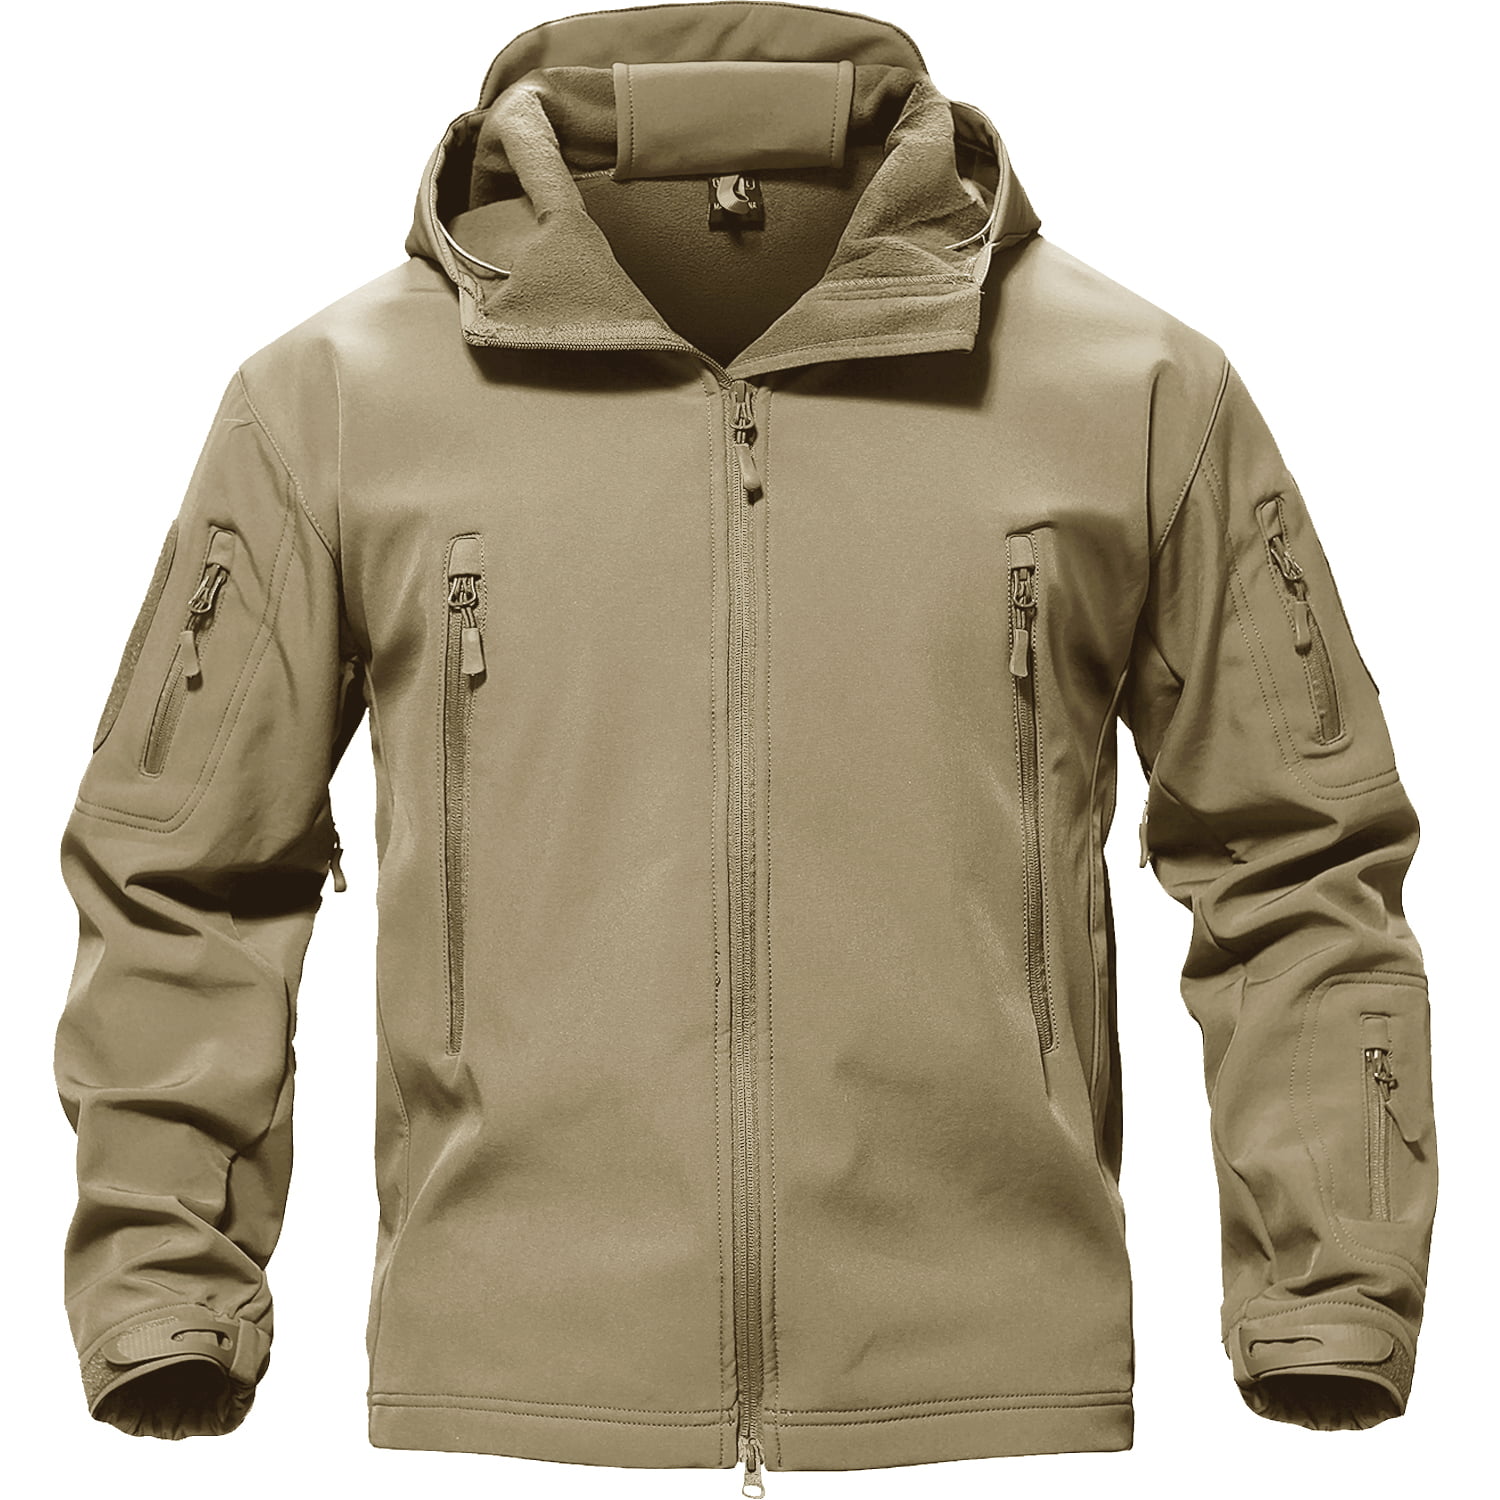 Windproof Outdoor Hiking Coat,B,S Mens Military Camouflage Jacket,Waterproof Winter Fleece Jacket